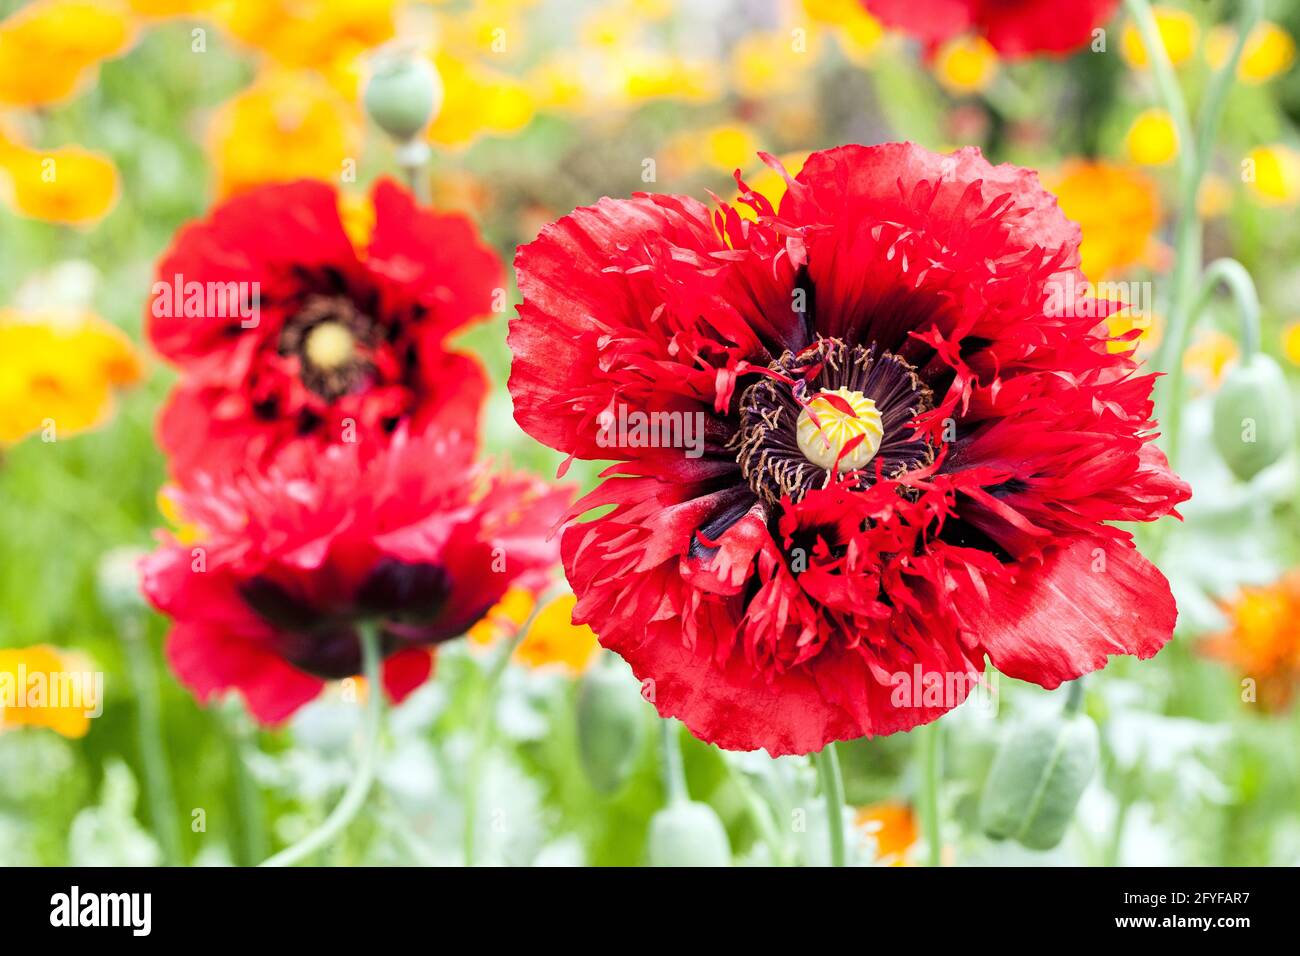 Papaver ernsthaft Scarlet trägt tiefrote Blüten mit zotteligen Blütenblättern, und das hat ein dunkles Zentrum, Papaver somniferum Red Opium Mohnblumen Stockfoto